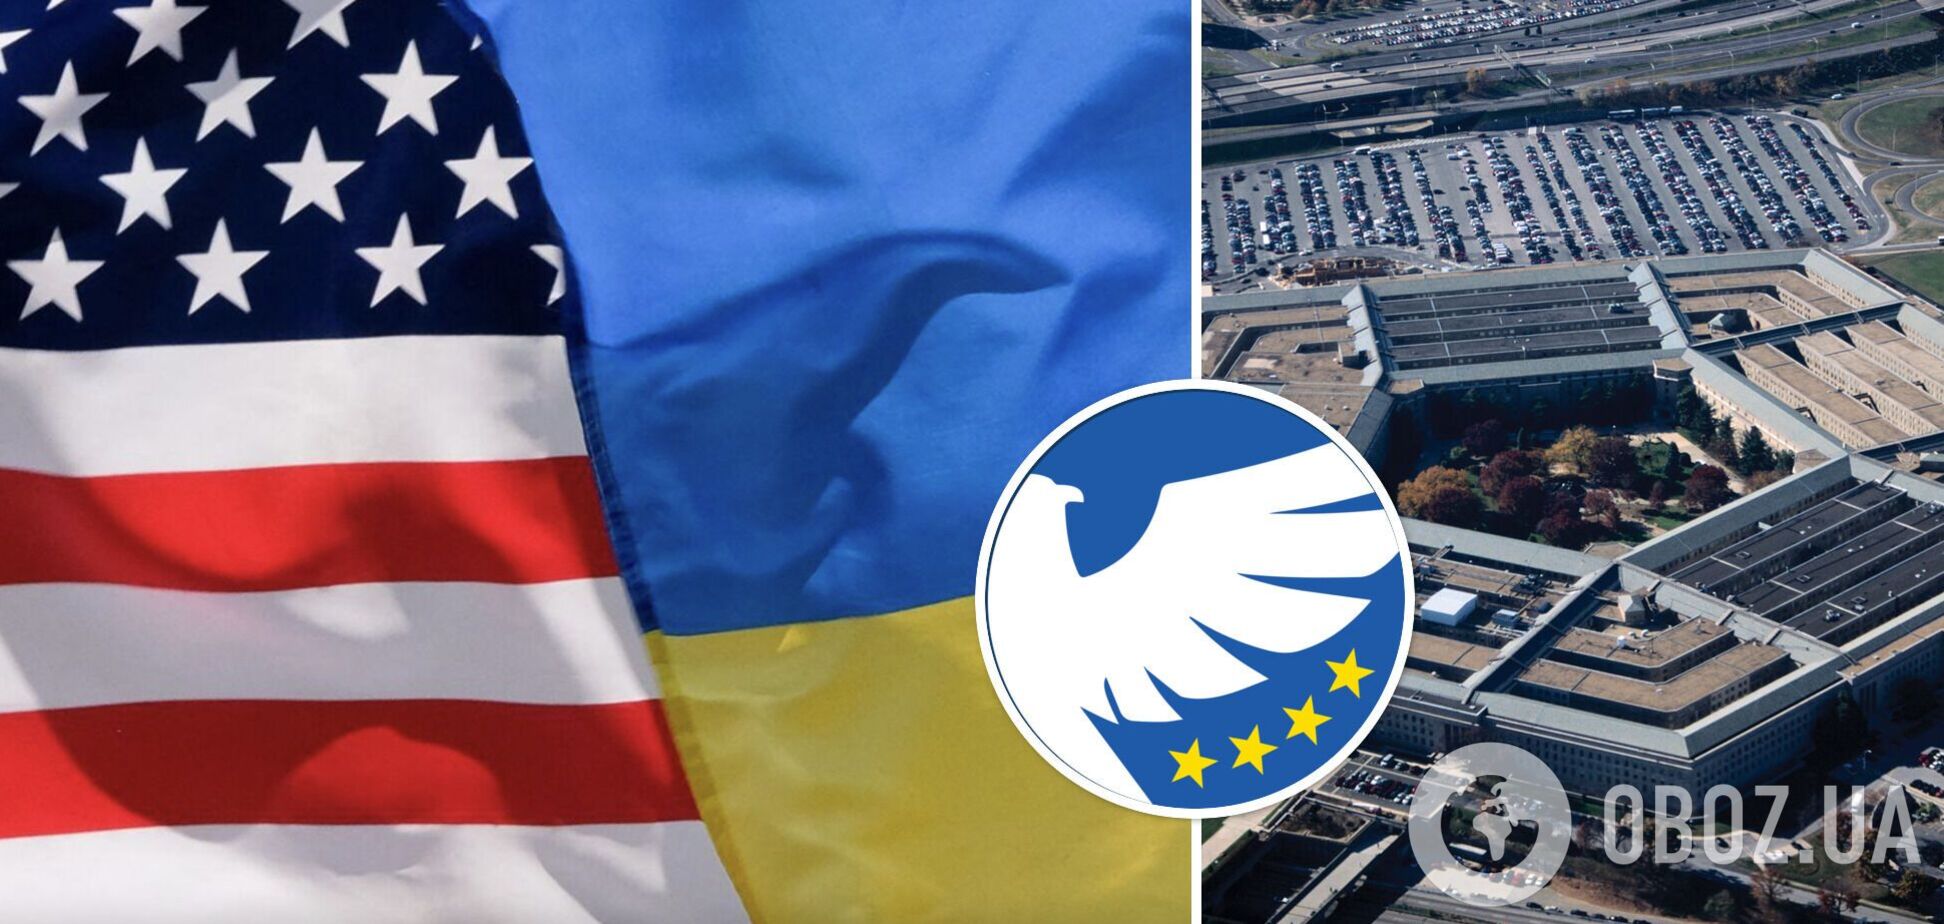 Пентагон запустил сайт по контролю американской военной помощи Украине: как он работает